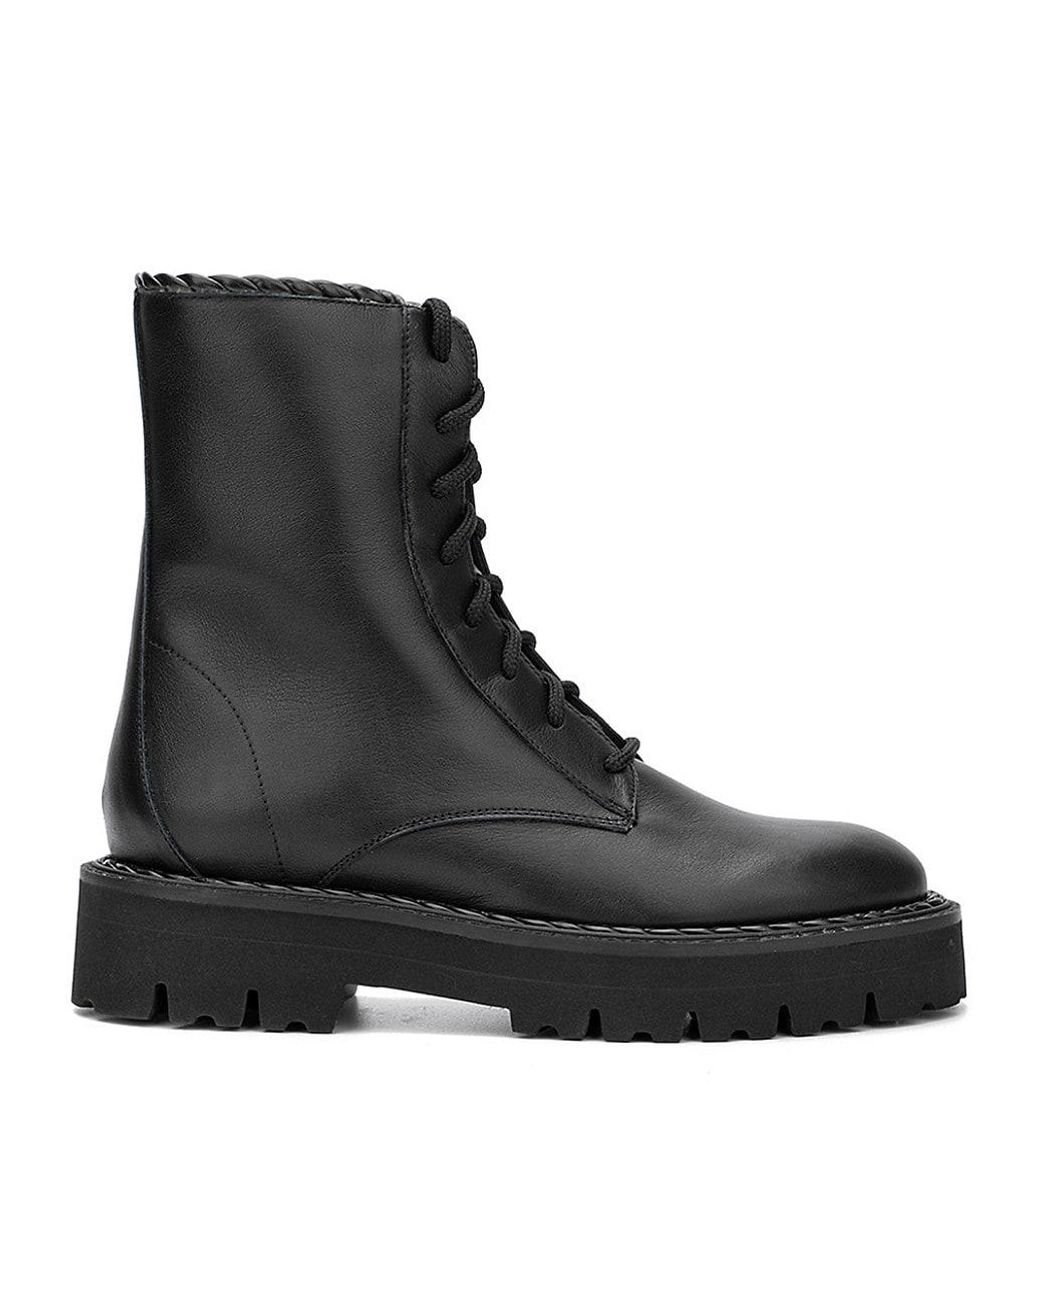 Aquatalia Sadie Leather Combat Boots in Black | Lyst